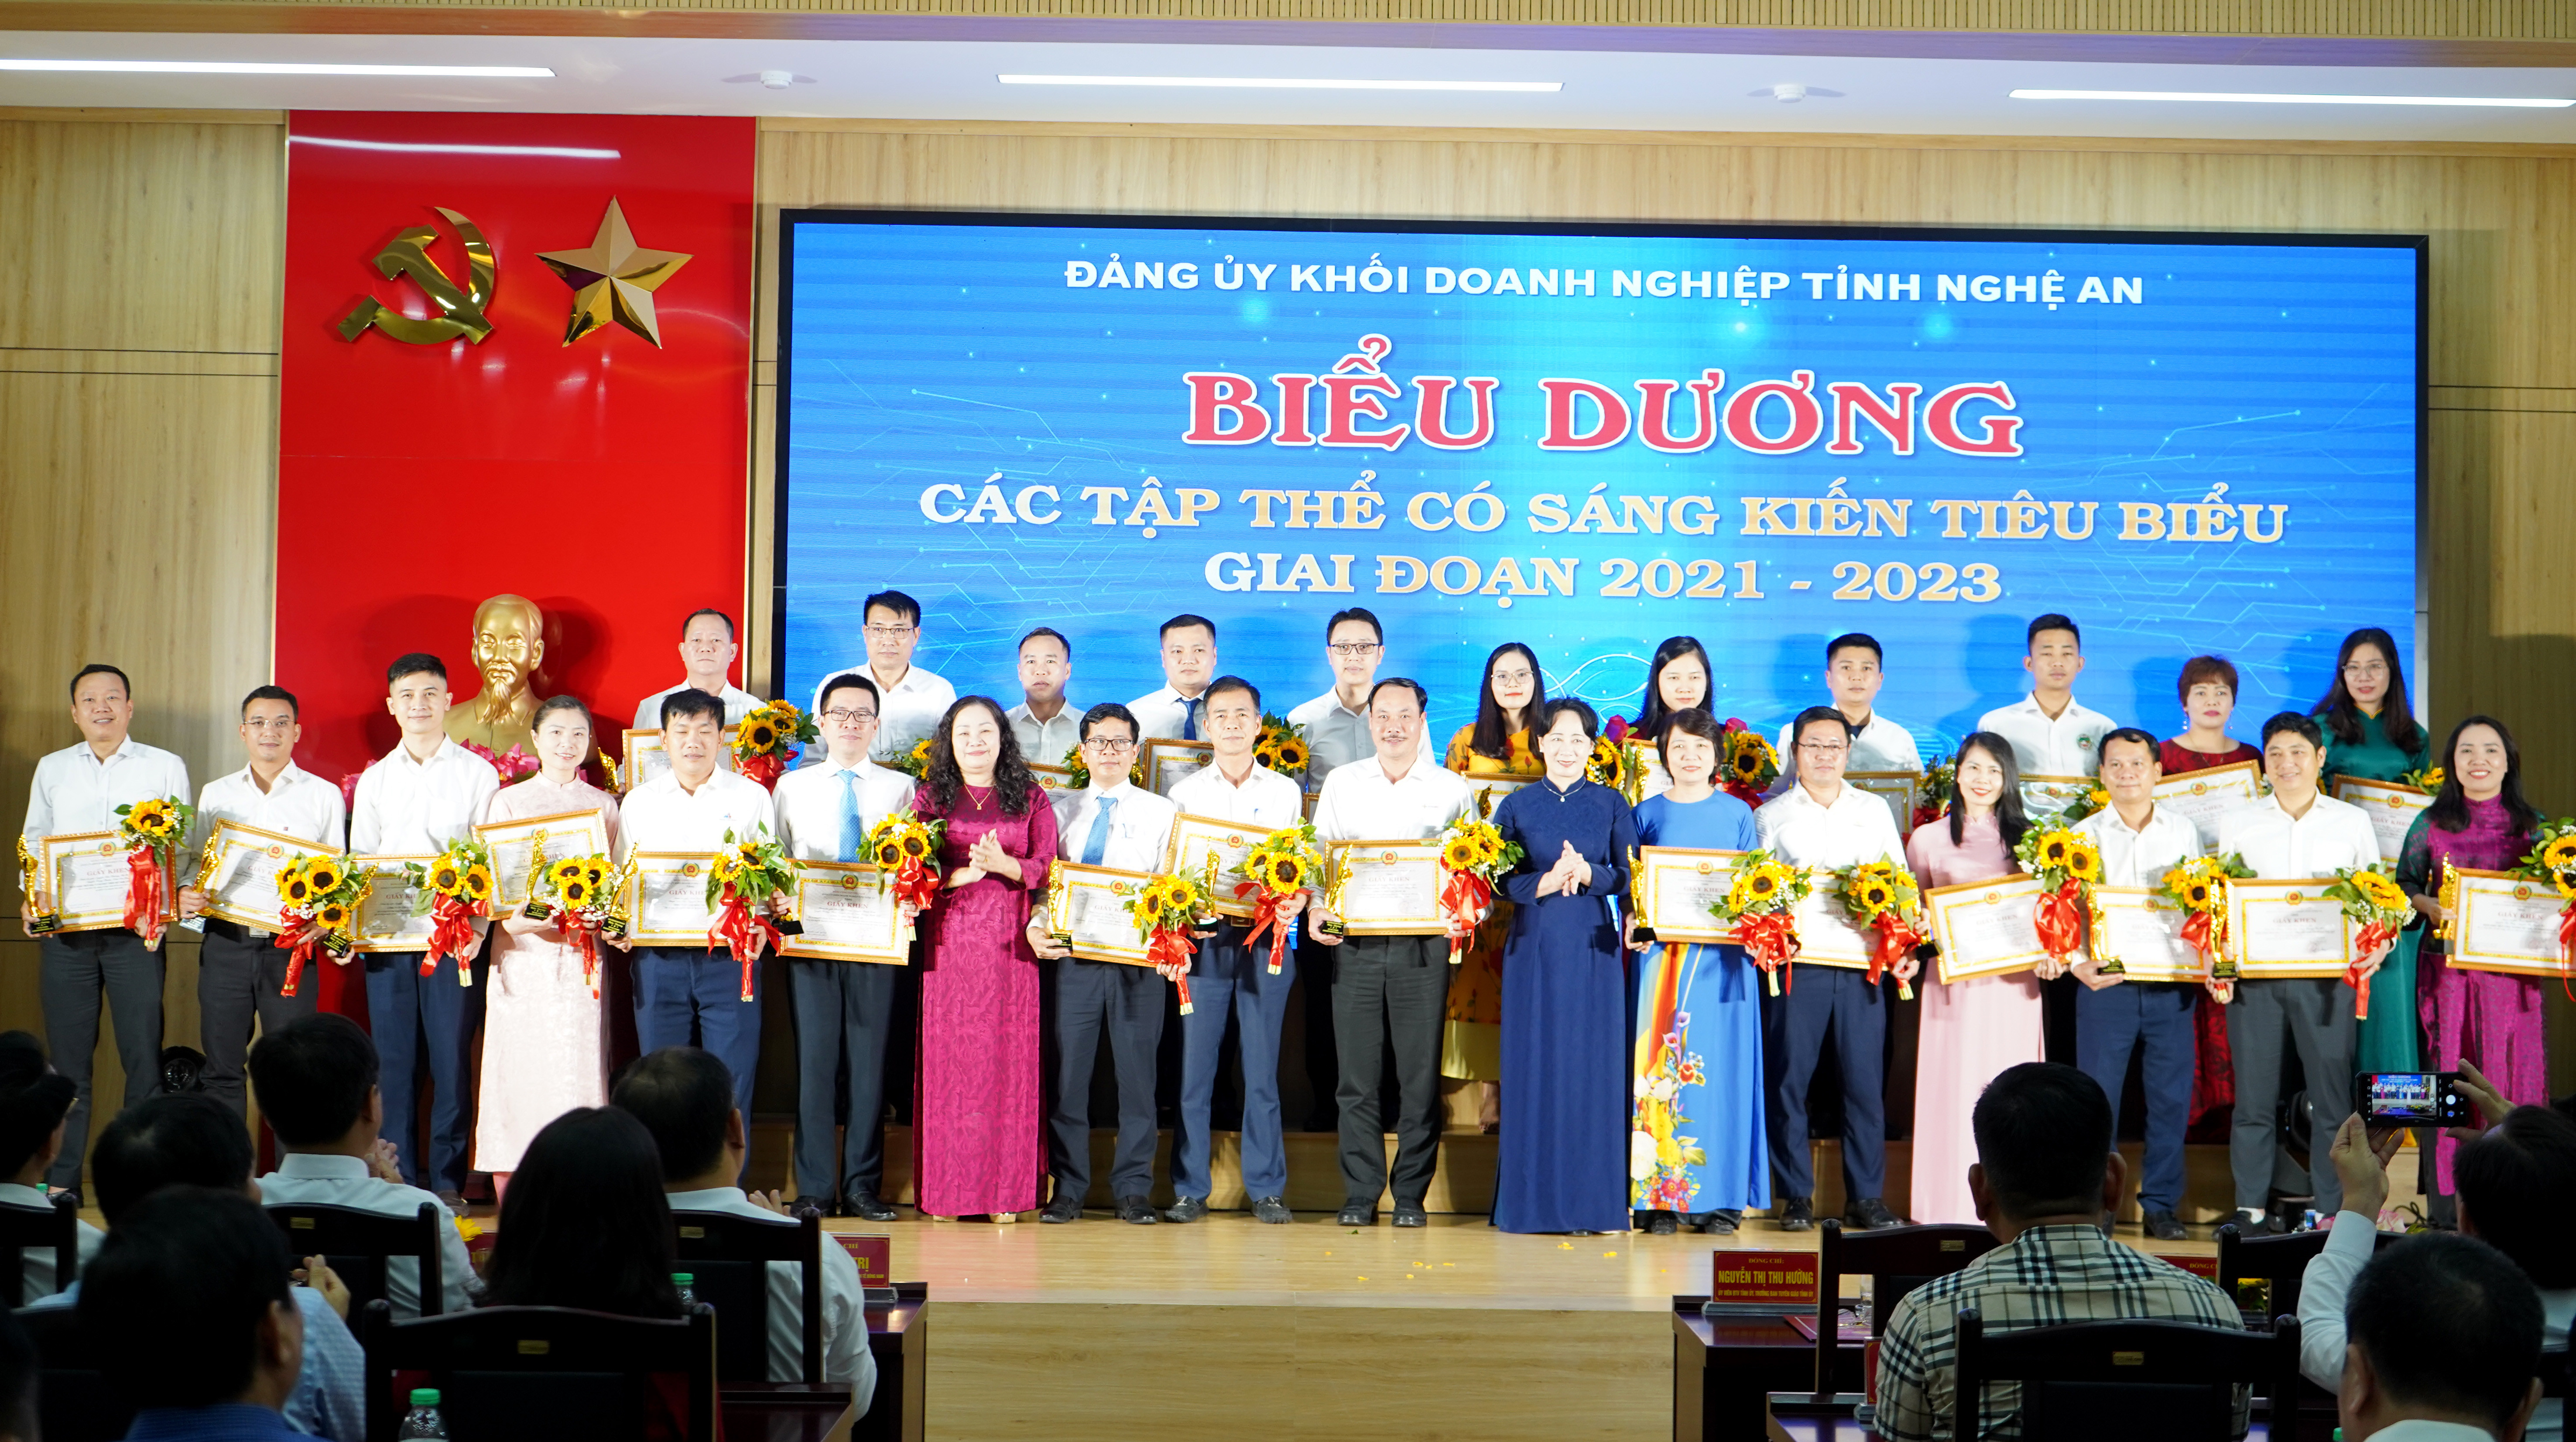 bna_Đảng uỷ khối Doanh nghiệp tỉnh tặng giấy khen cho các tập thể có sáng kiến tiêu biểu giai đoạn 2021 2023 ảnh Quang An 2.jpg